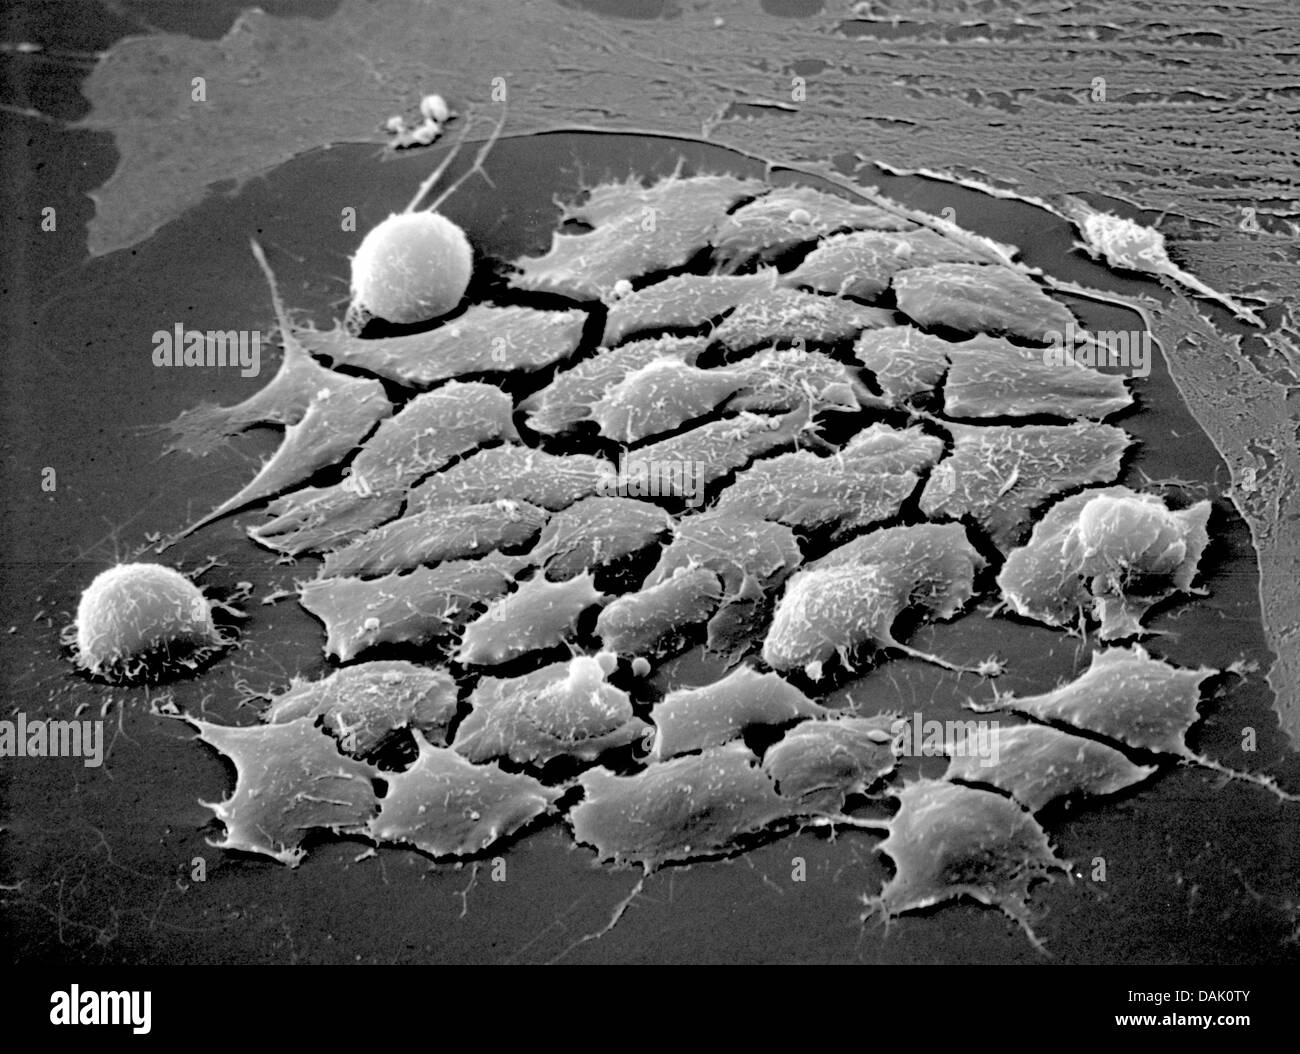 - Un documento sin fecha microscopio electrónico Folleto imagen del Instituto Max Planck de Biomedicina Molecular muestra células madre embrionarias de ratón en Muenster, Alemania. Numerosos científicos en el instituto de la Universidad de Münster están involucradas en la investigación con células madre. Foto: Mpi Muenster Foto de stock